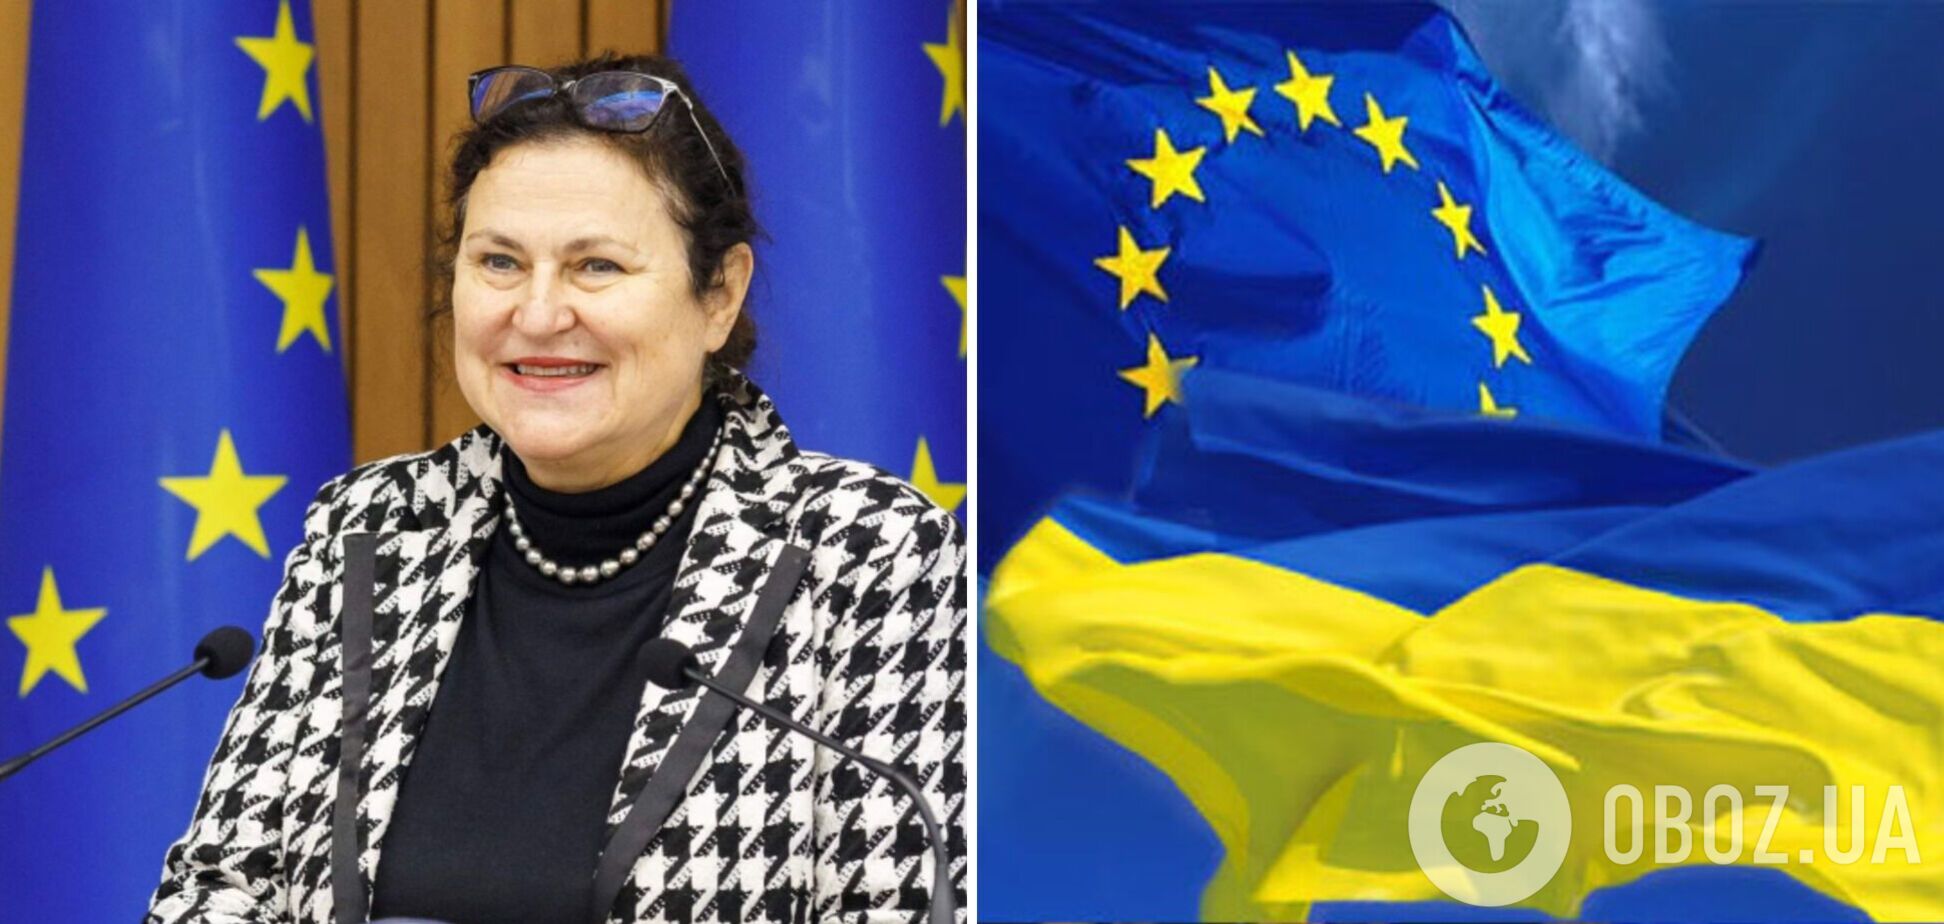 Киев получил особый 'сигнал': что известно о Катарине Матерновой, которая станет послом ЕС в Украине